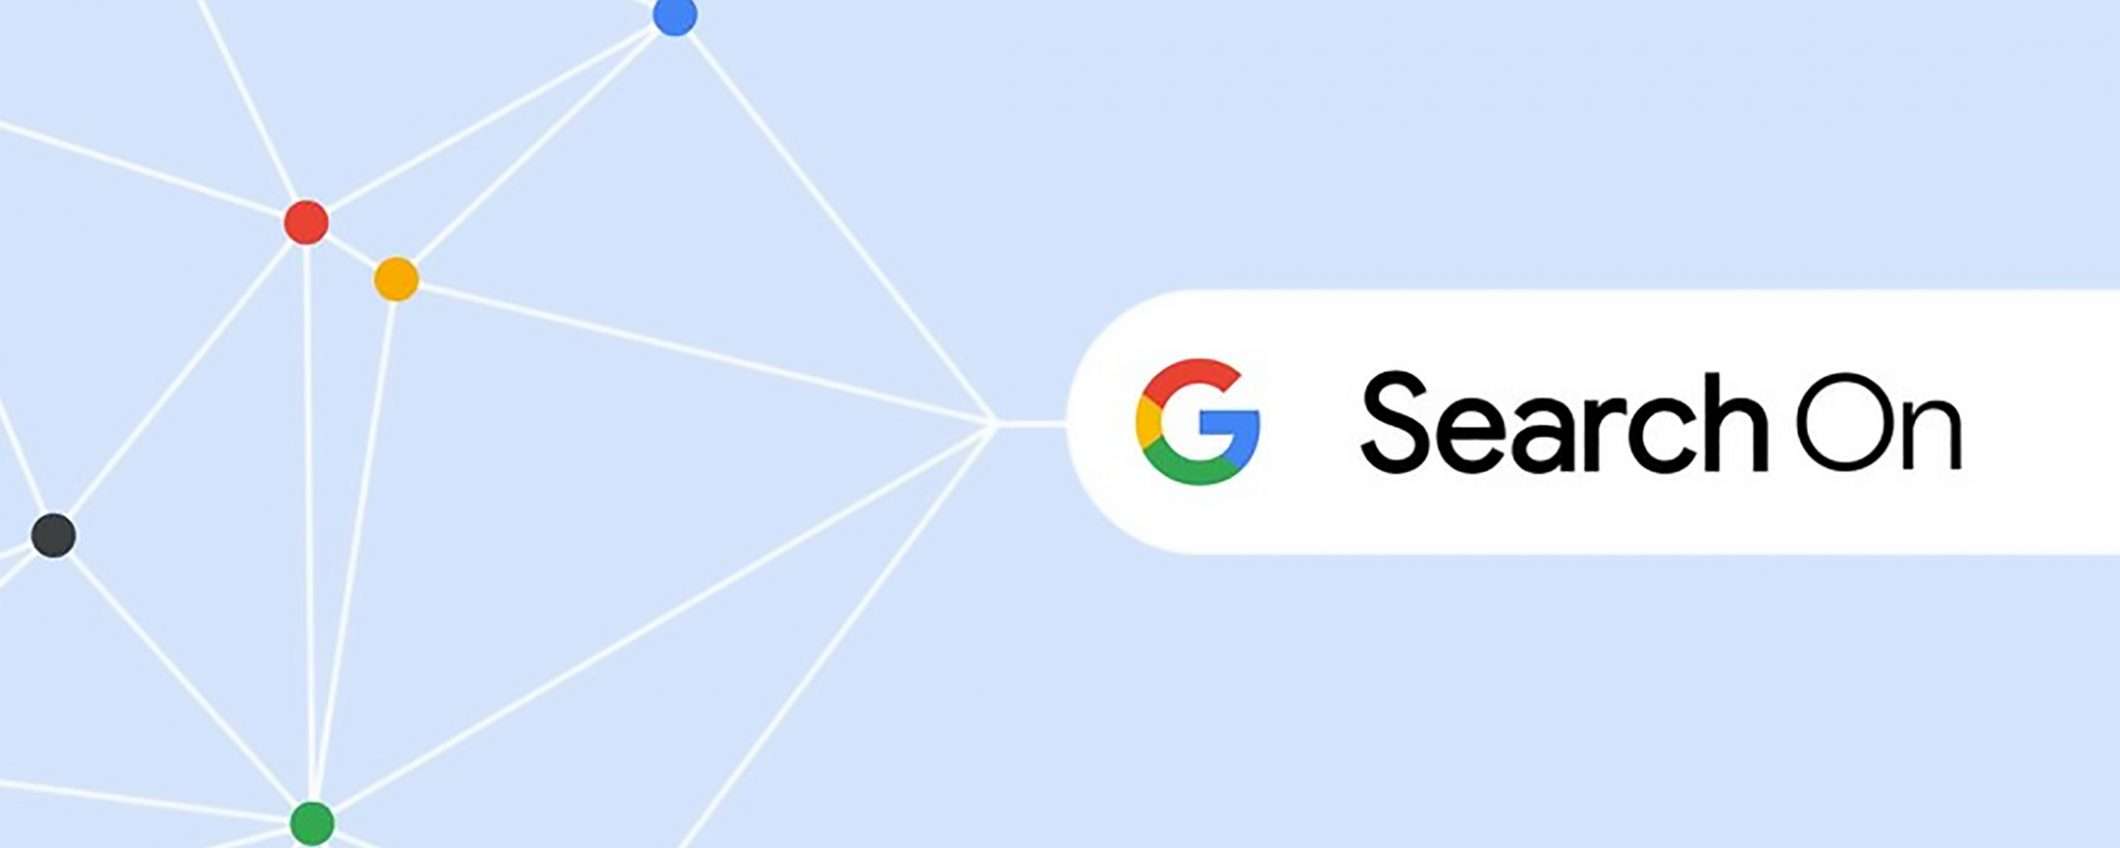 Google Search On: così l'IA migliora le ricerche